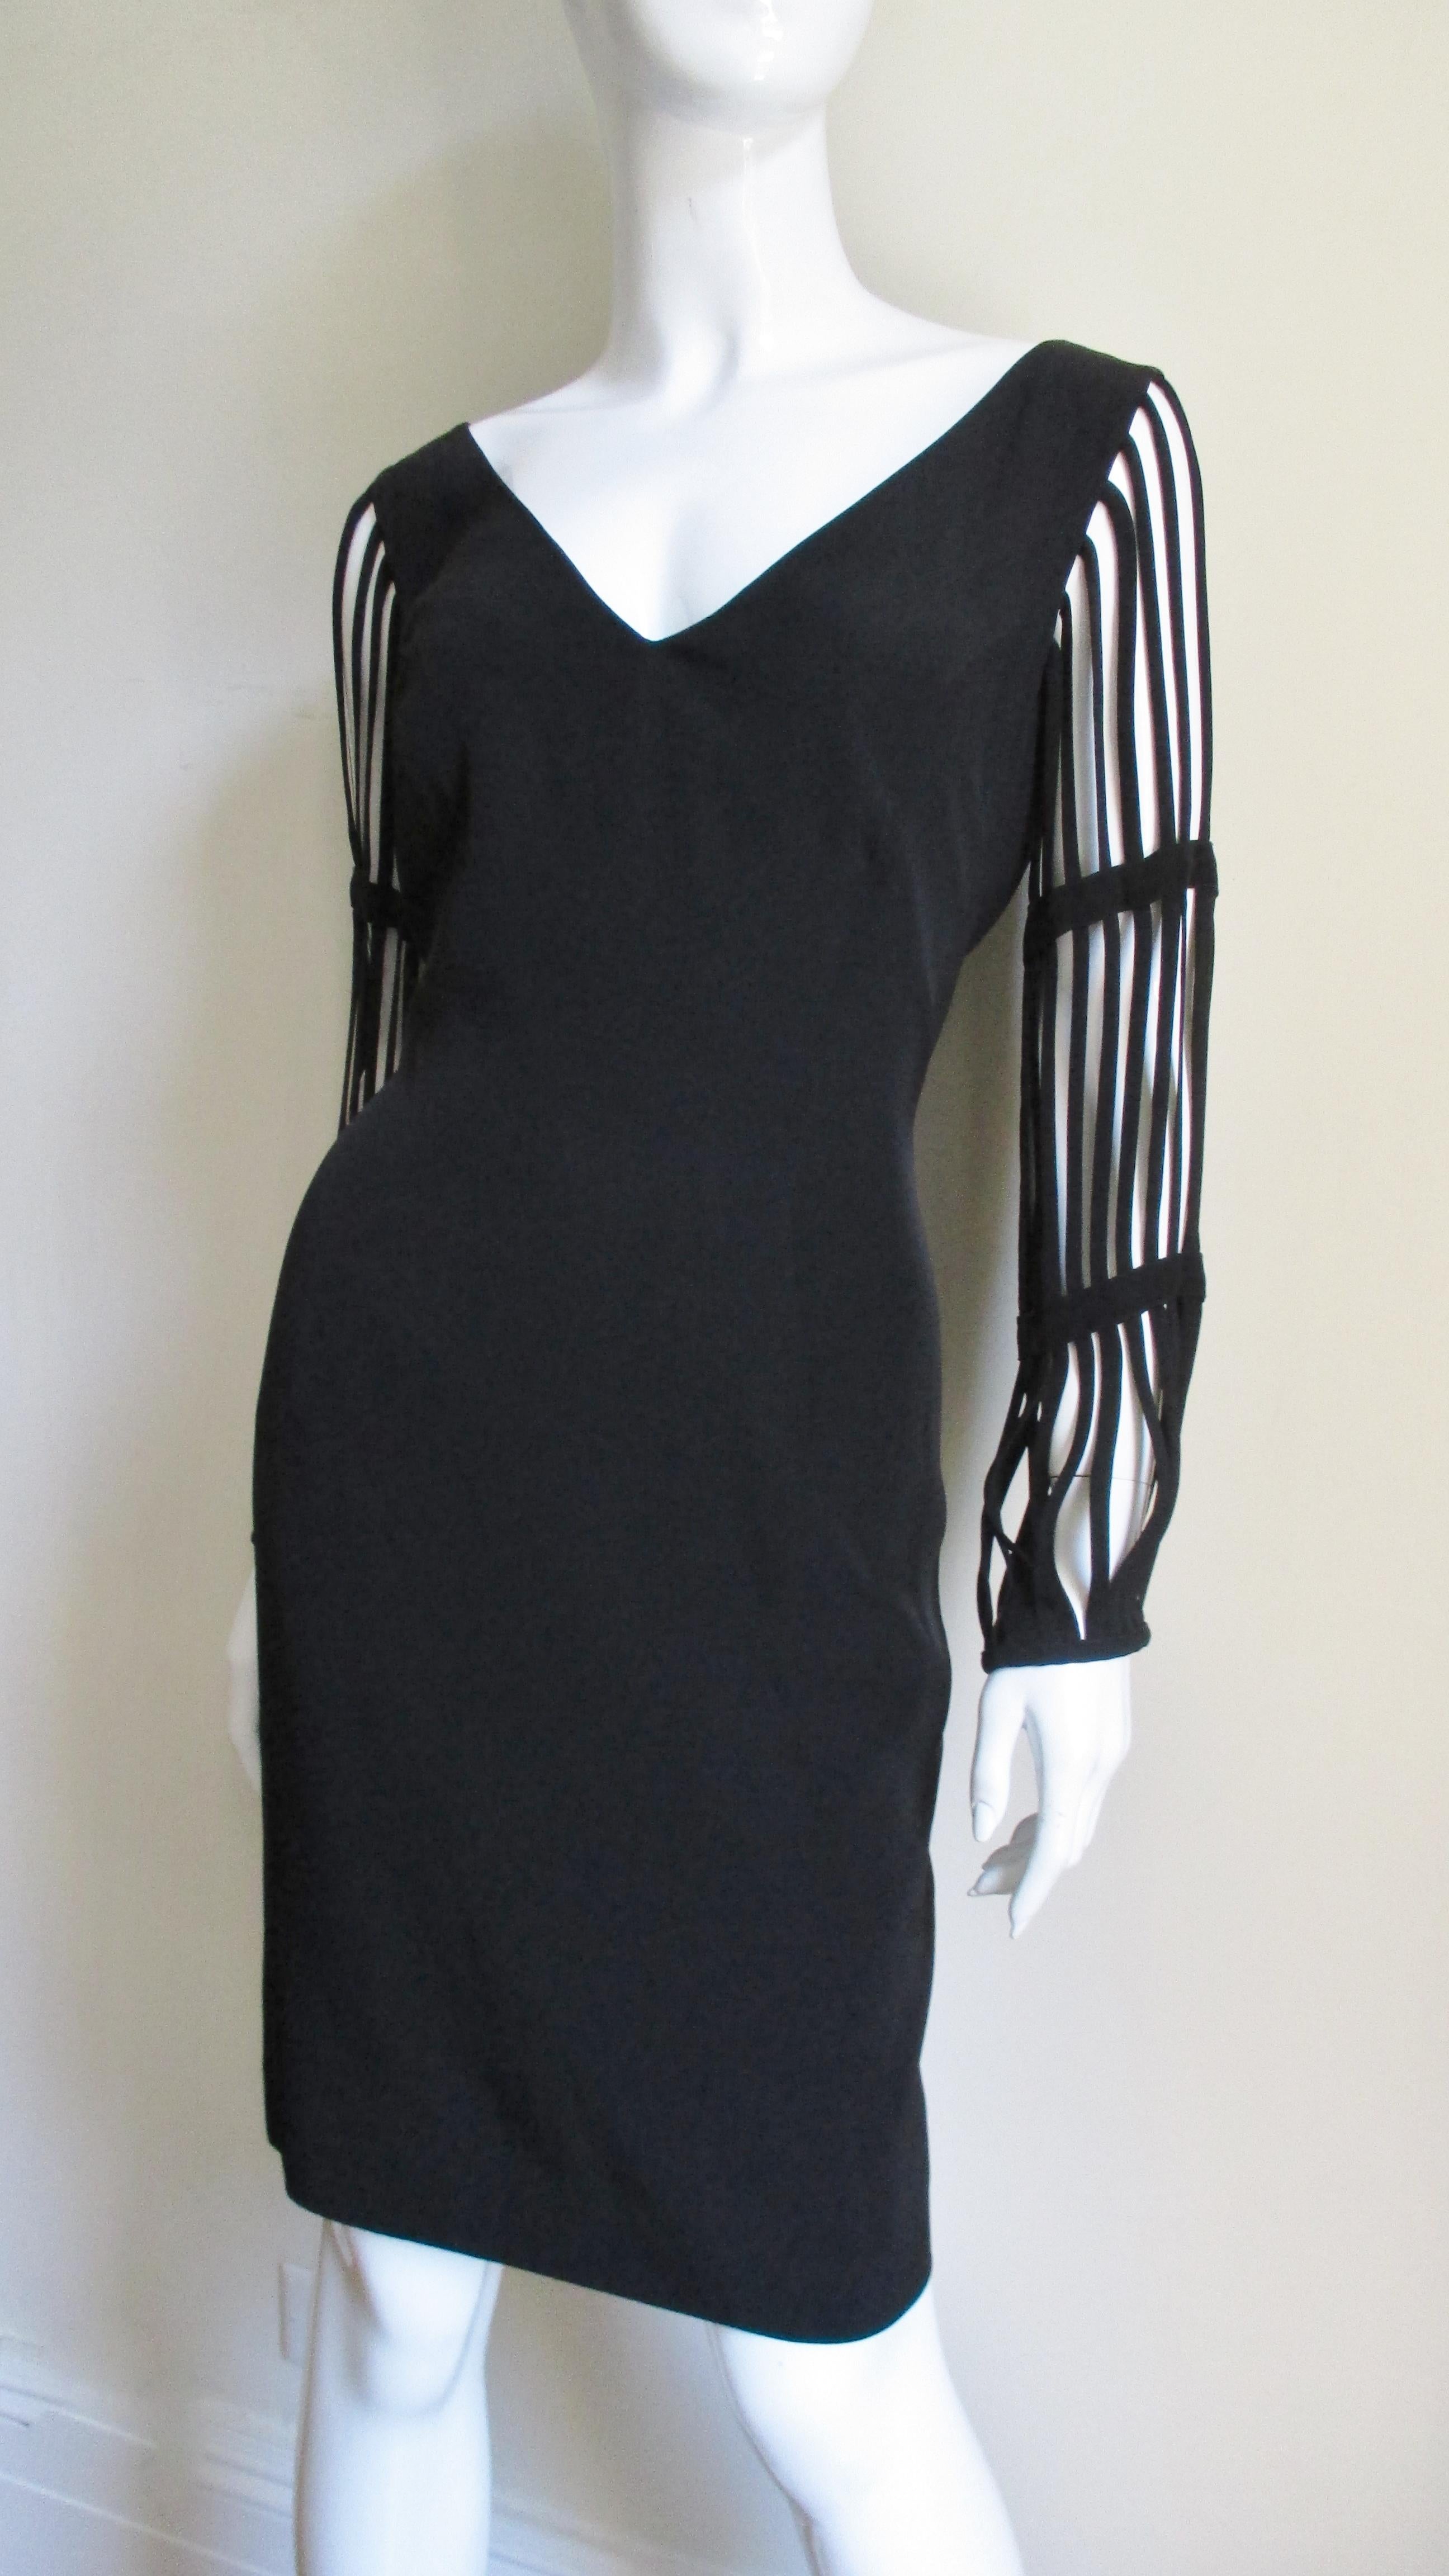 Ein tolles kleines schwarzes Kleid von Sophie Sitbon, Paris.  Es ist ein einfaches Kleid mit V-Ausschnitt und großen Käfigärmeln, die aus fertigen, armlangen Stoffstreifen bestehen.  Die Wirkung ist fabelhaft.  Es ist vollständig gefüttert und hat